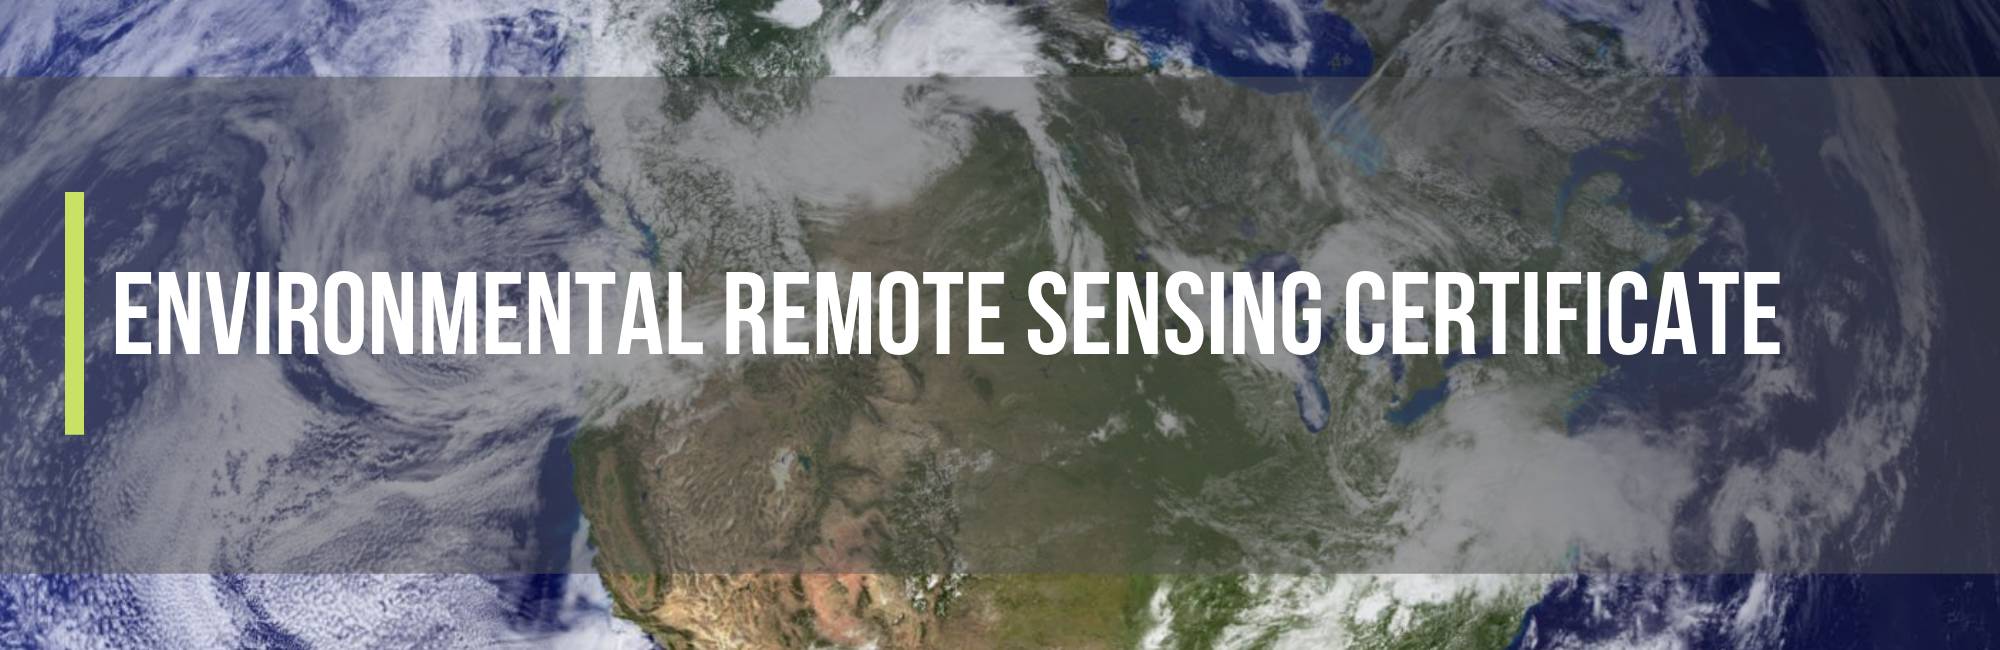 Environmental Remote Sensing Certificate